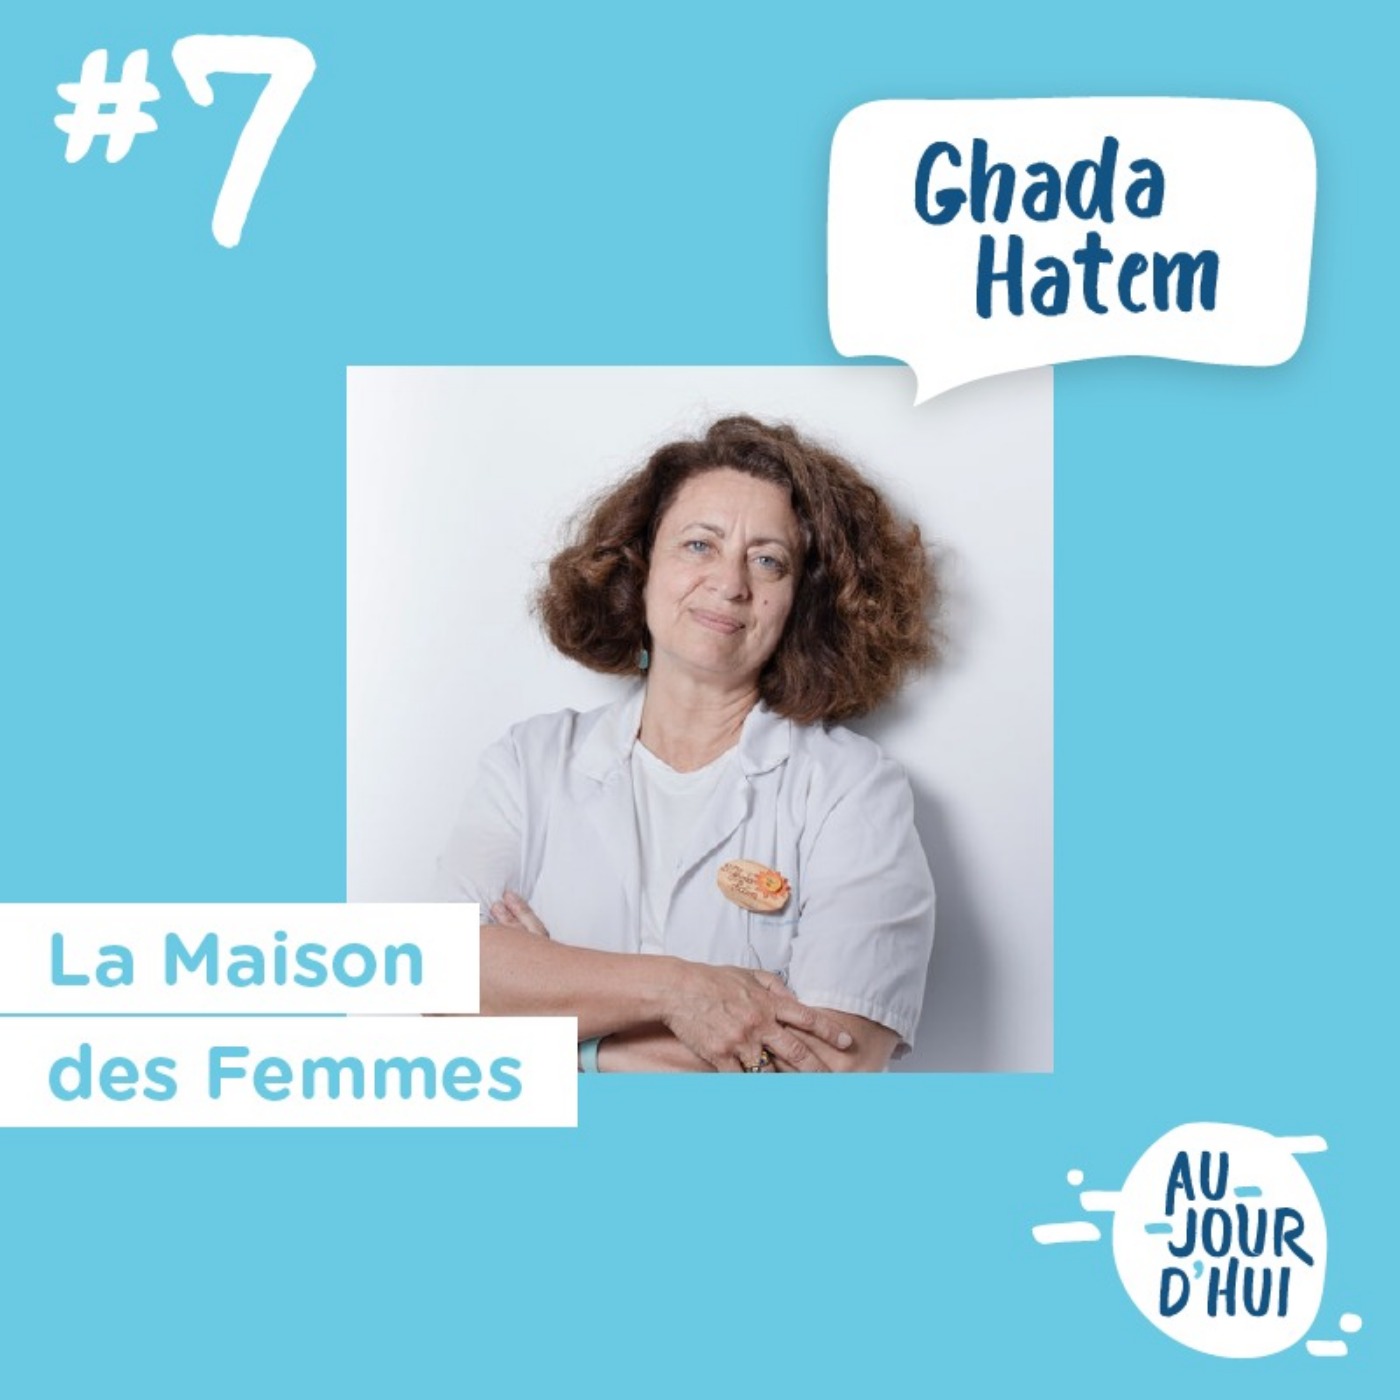 #7 Ghada Hatem (La Maison des femmes) : « La violence faites aux femmes est un problème de santé public »